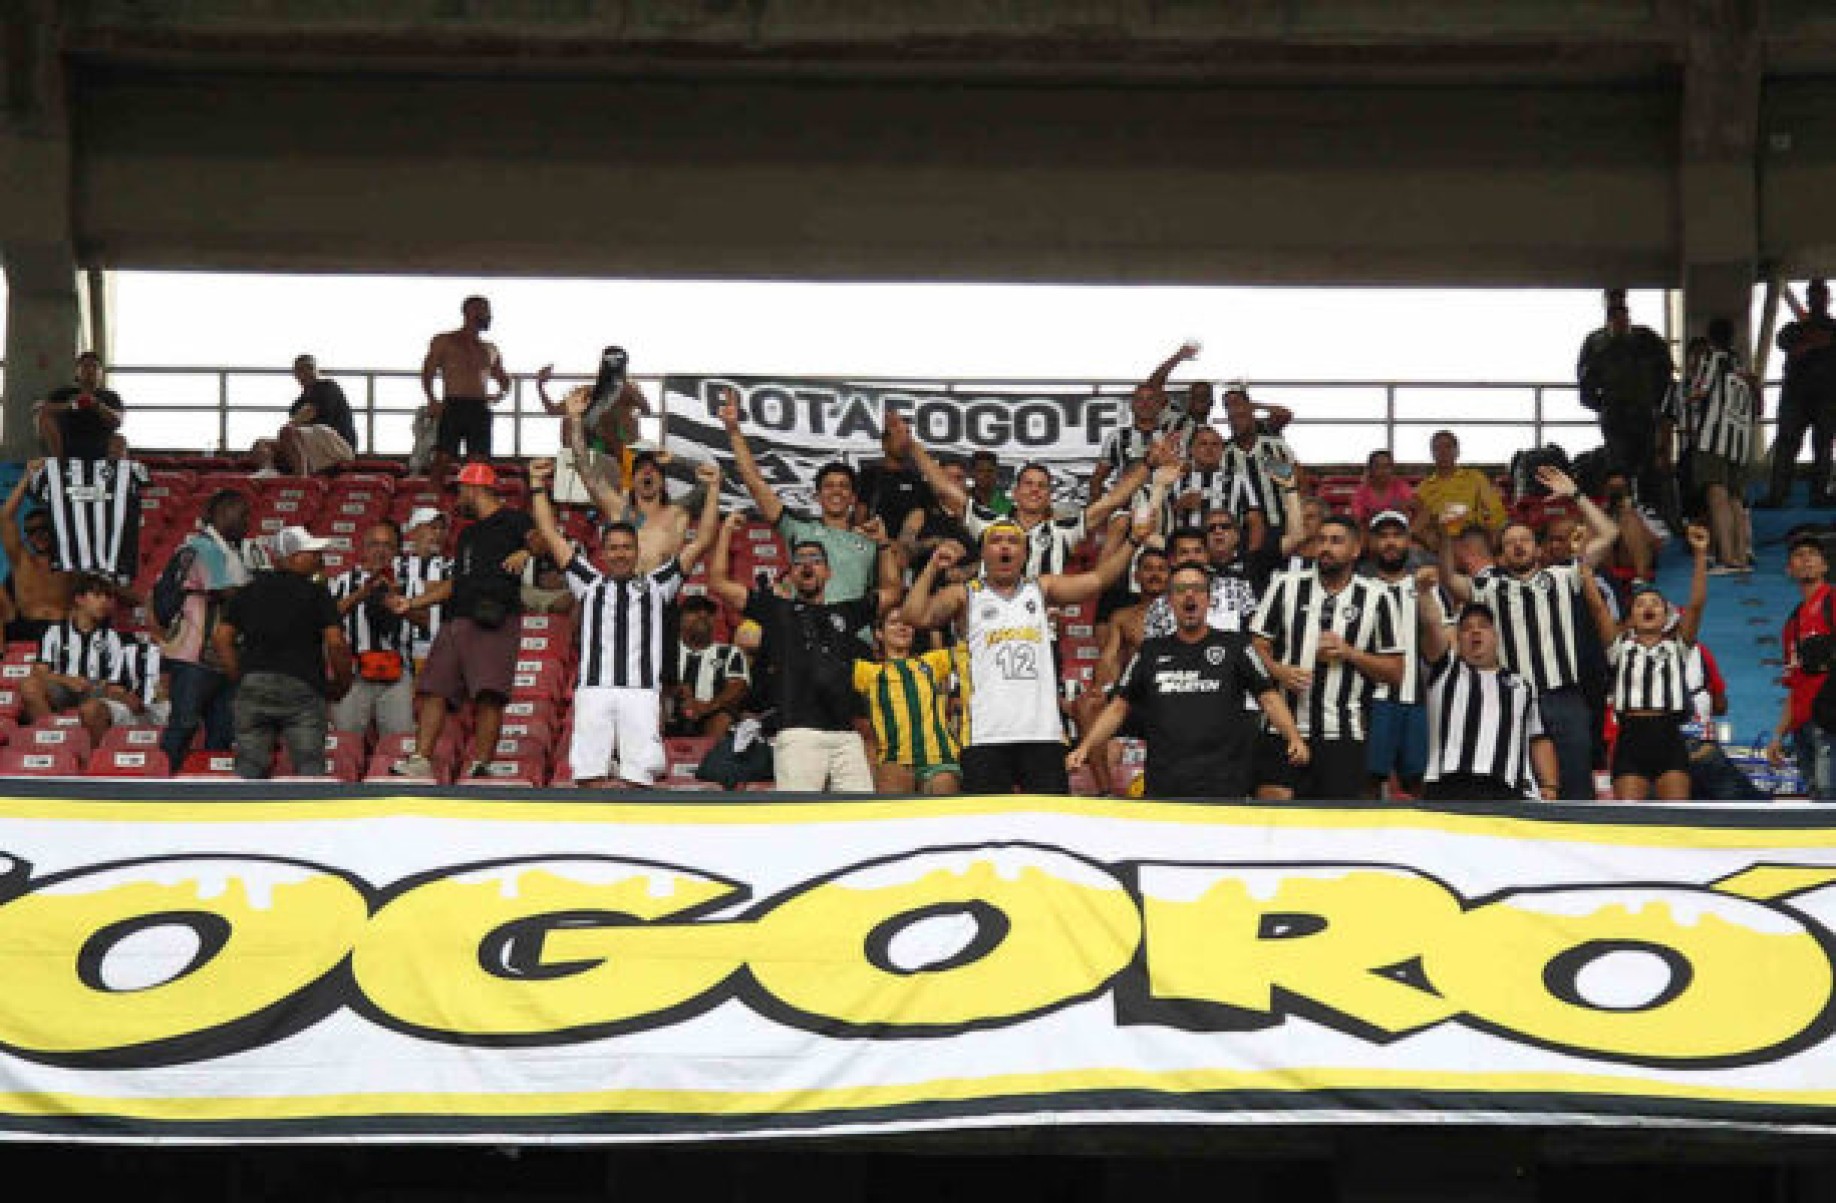 Torcida do Botafogo é expulsa de estádio faltando 15 minutos para o fim da partida